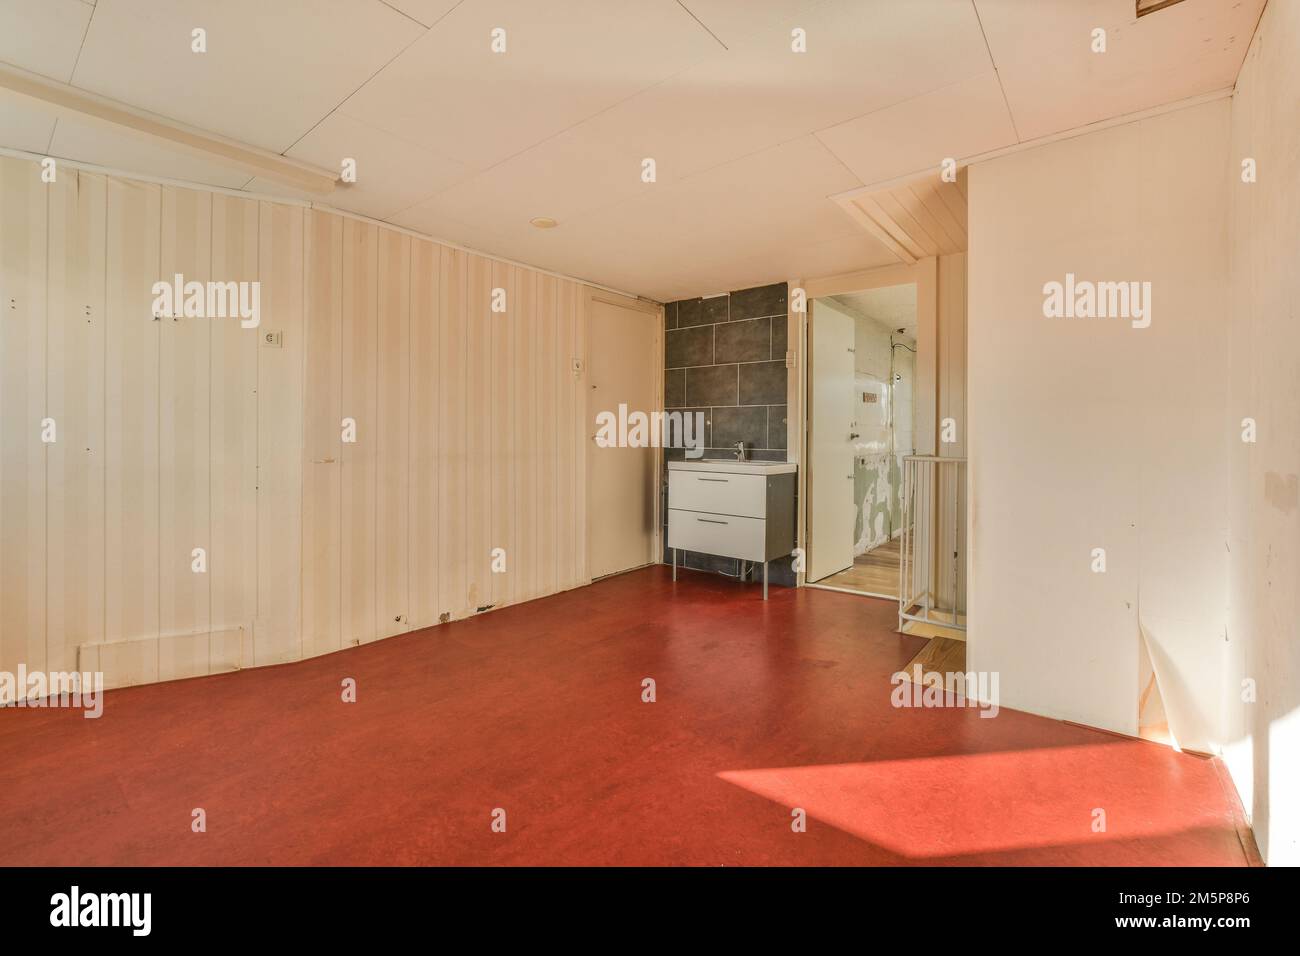 una stanza vuota con pavimento rosso e sfondi bianchi alle pareti, di fronte ad uno specchio Foto Stock